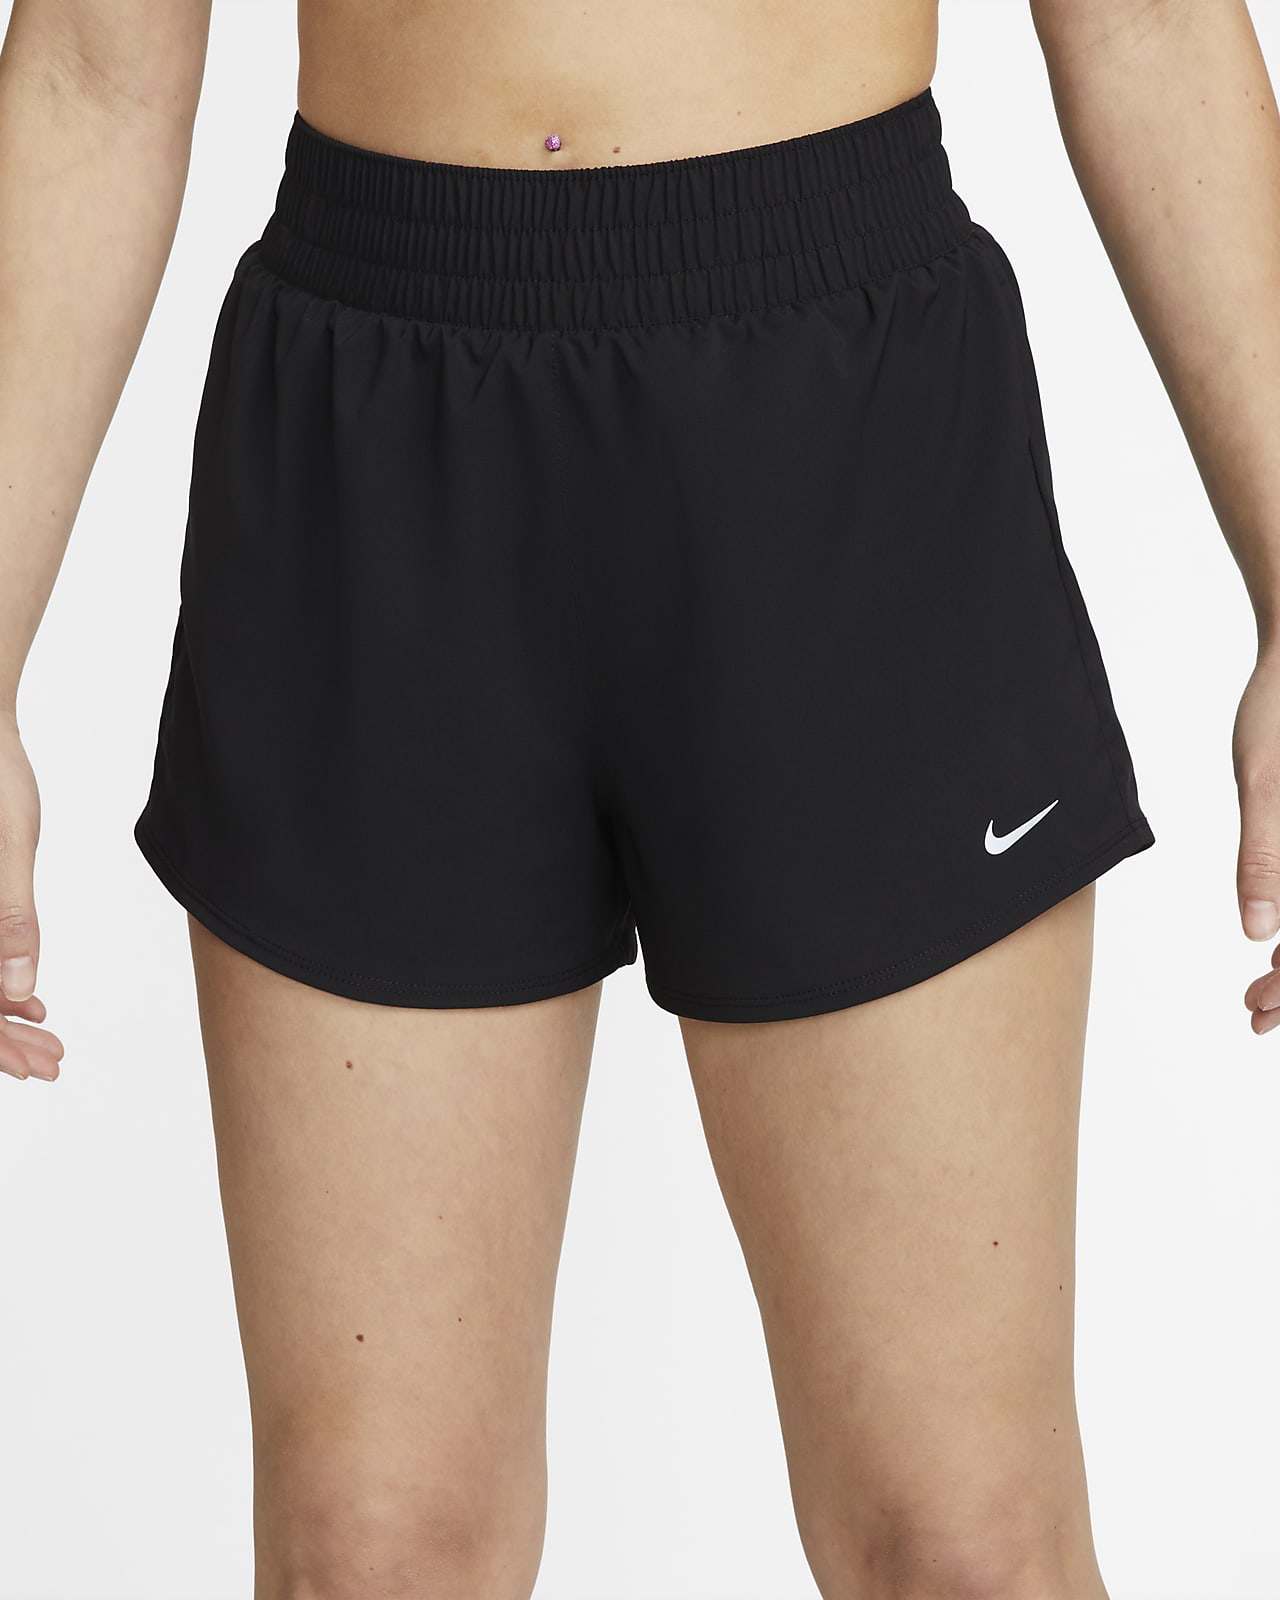 Short taille haute avec sous-short intégré Nike Dri-FIT One 8 cm pour femme. Nike FR